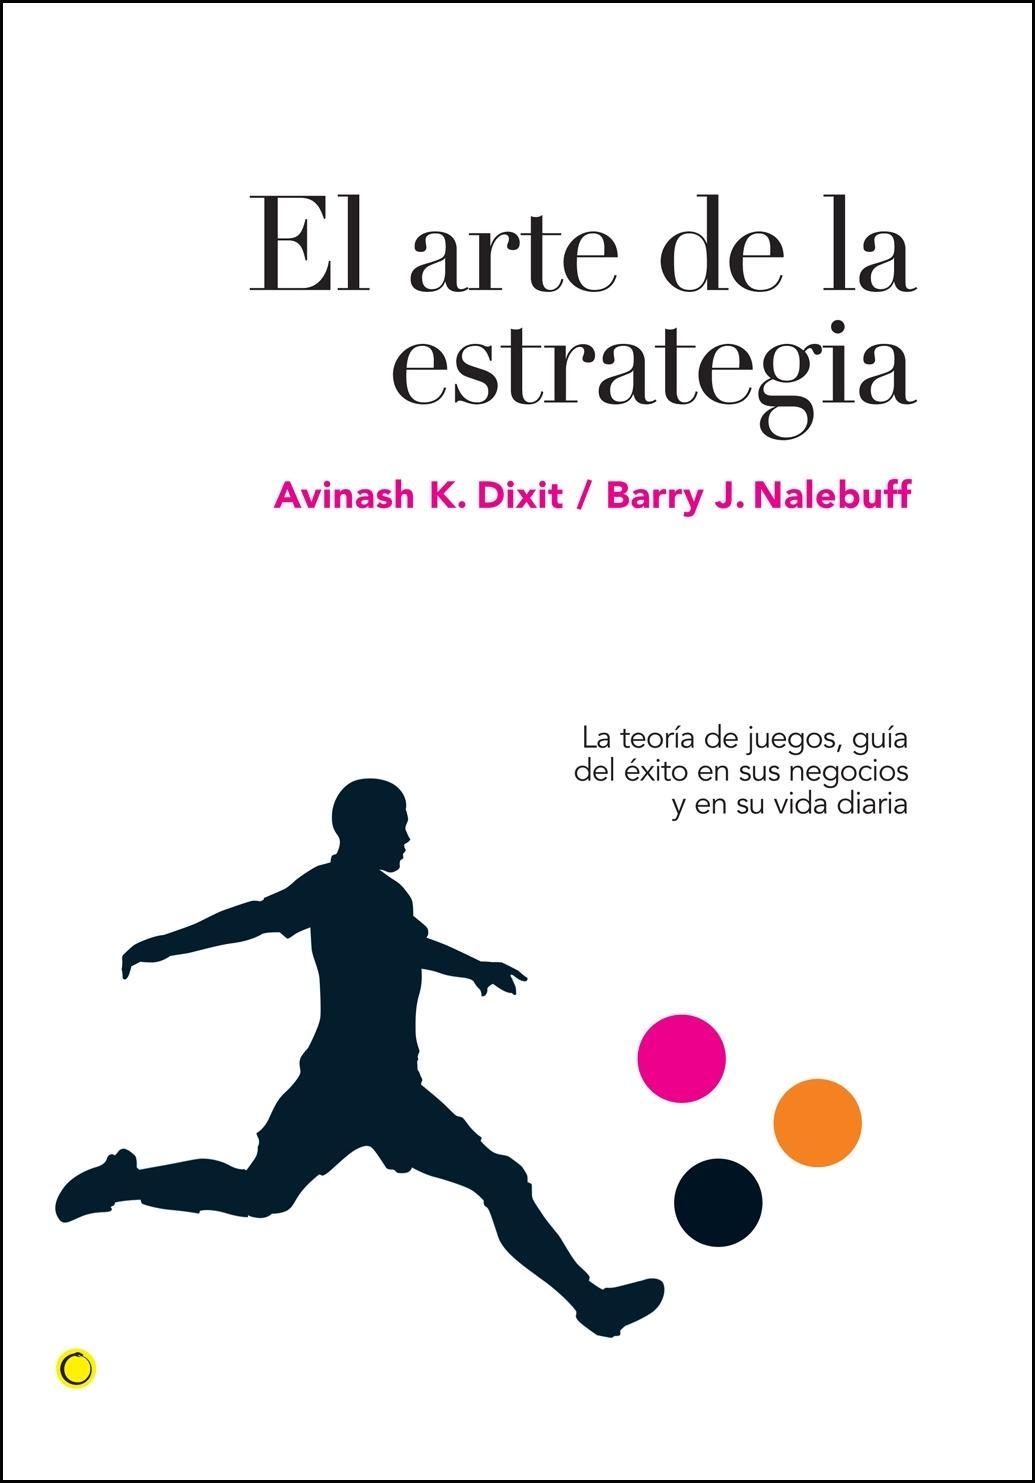 El Arte de la Estrategia "La Teoría de Juegos, Guía del Éxito en sus Negocios y su Vida Di"